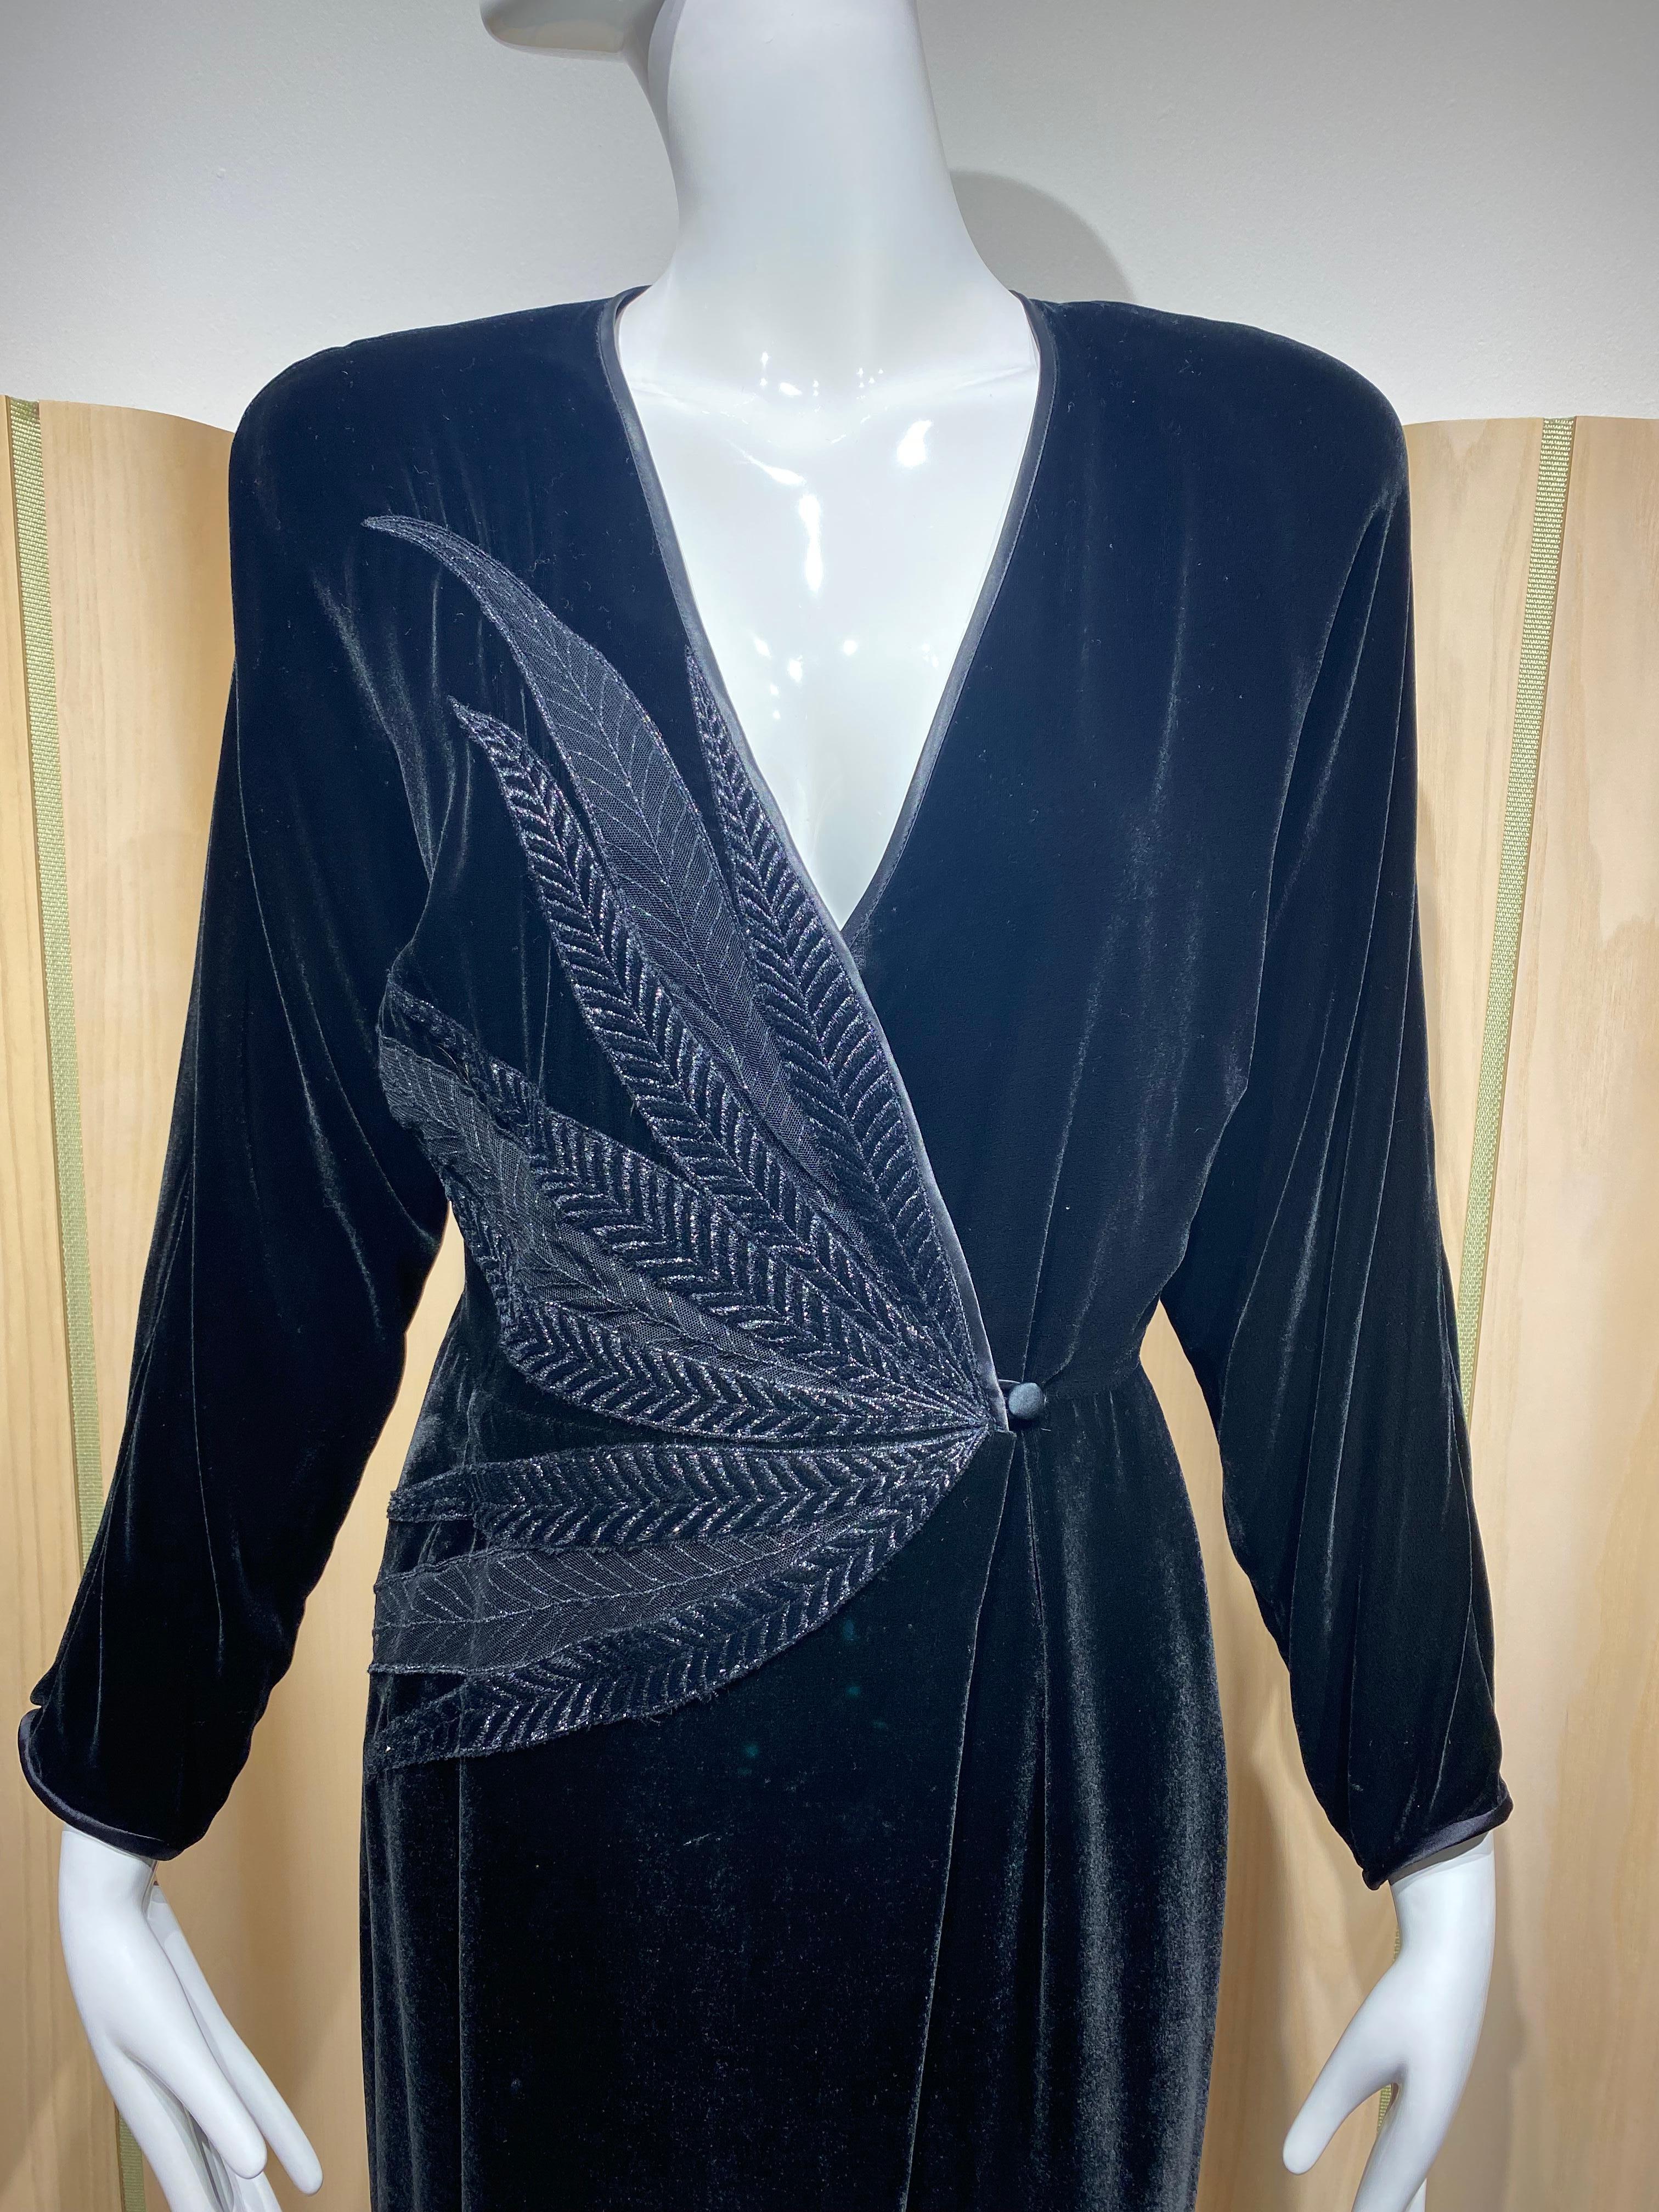 Vintage 1980s Janice wainwright V neck Velvet Long sleeve cocktail dress.
Bust: 36”/ Waist: 26”/ HIp: 34”